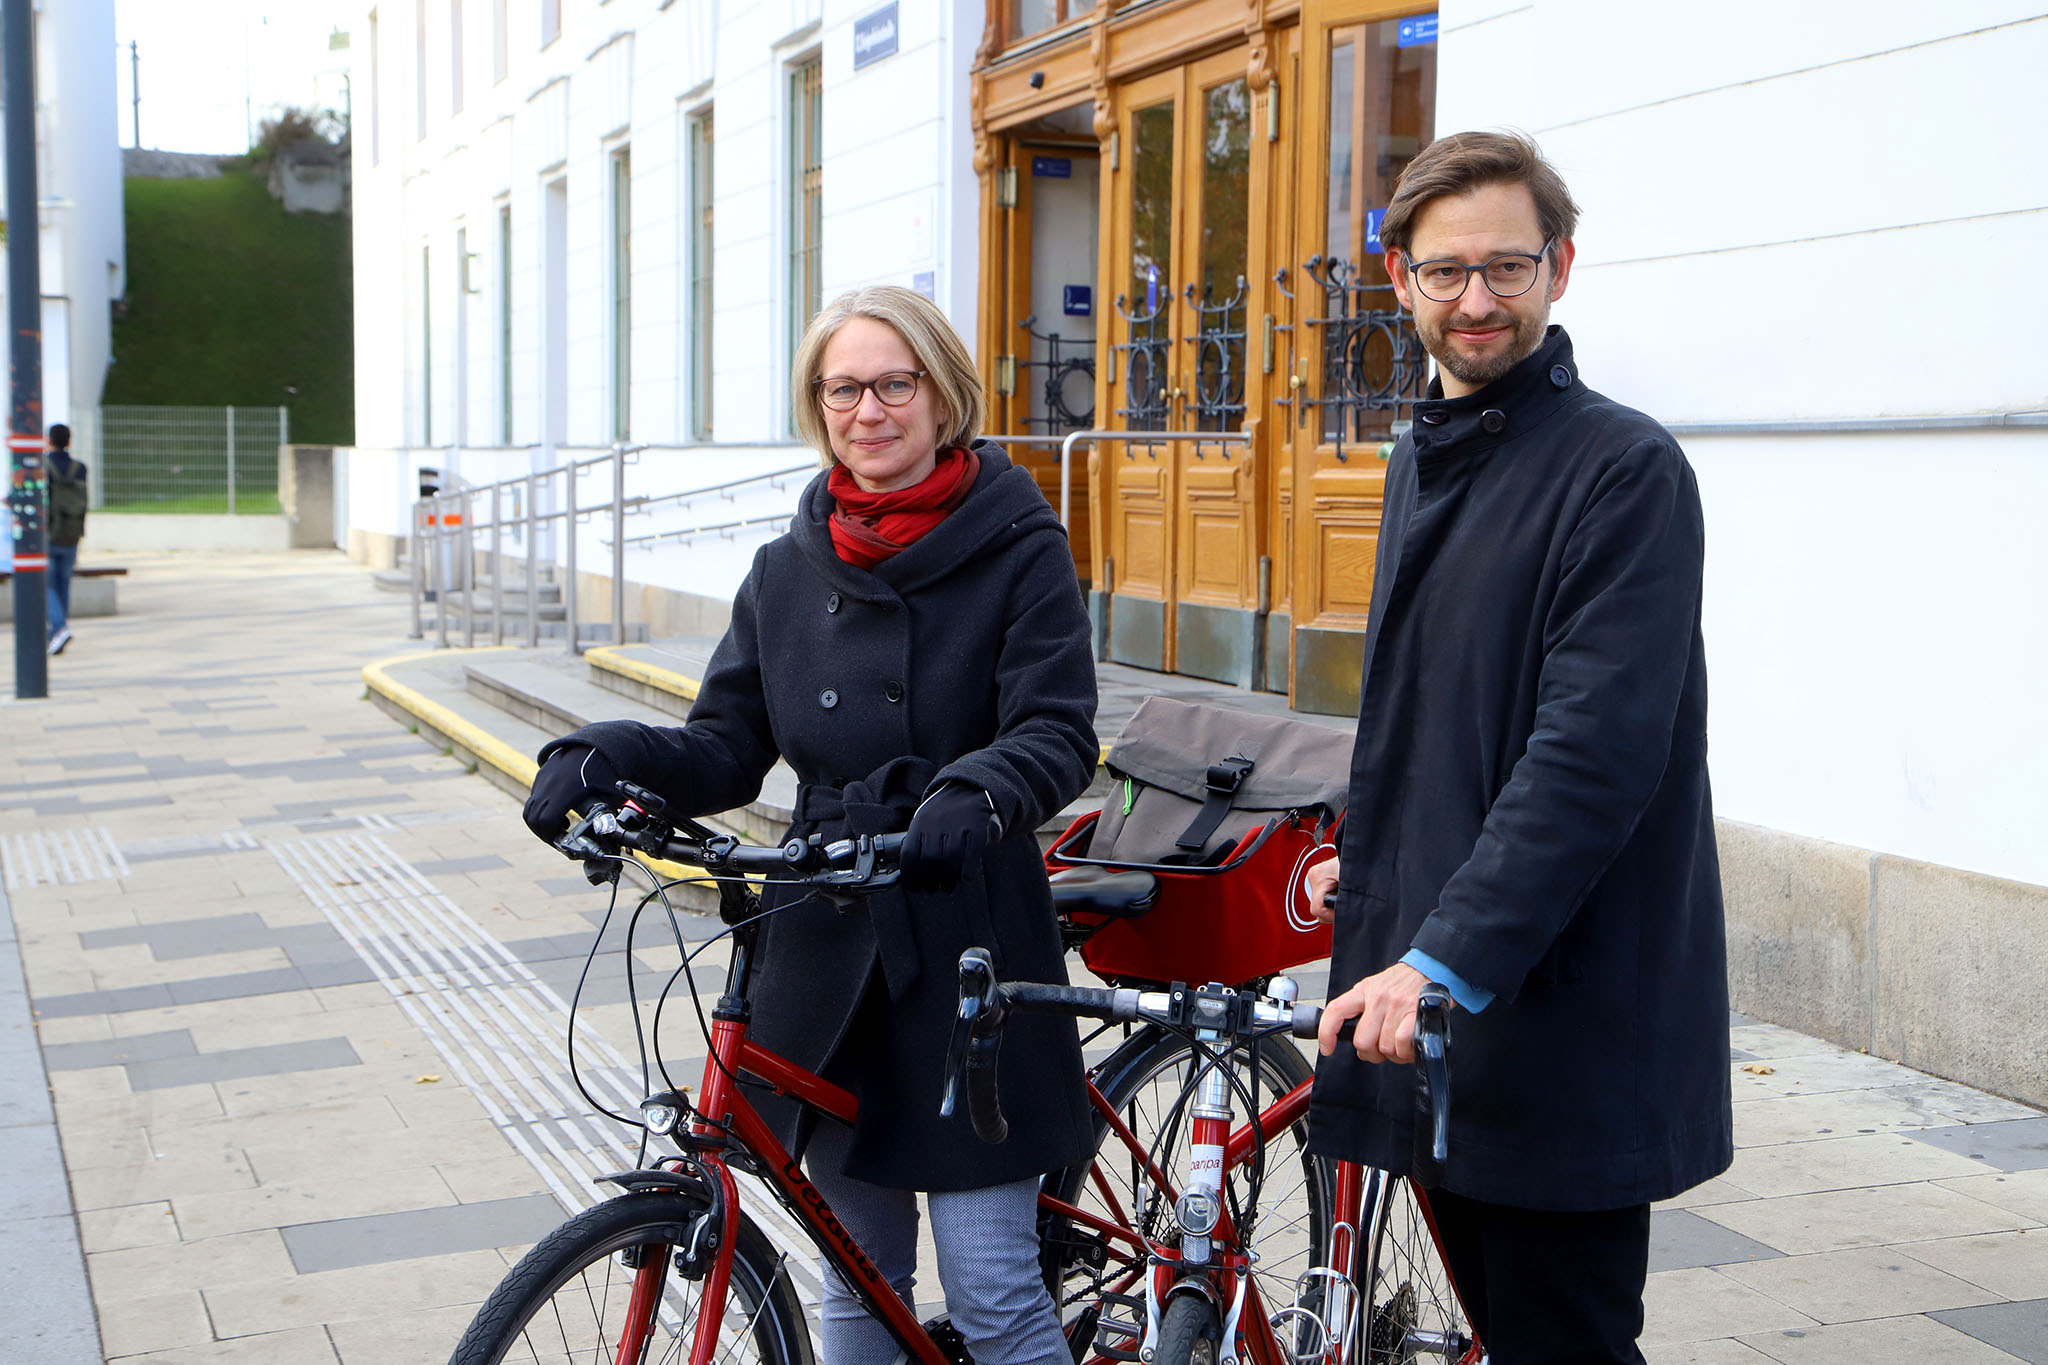 Michaela Schüchner und Martin Blum mit Fahrrad